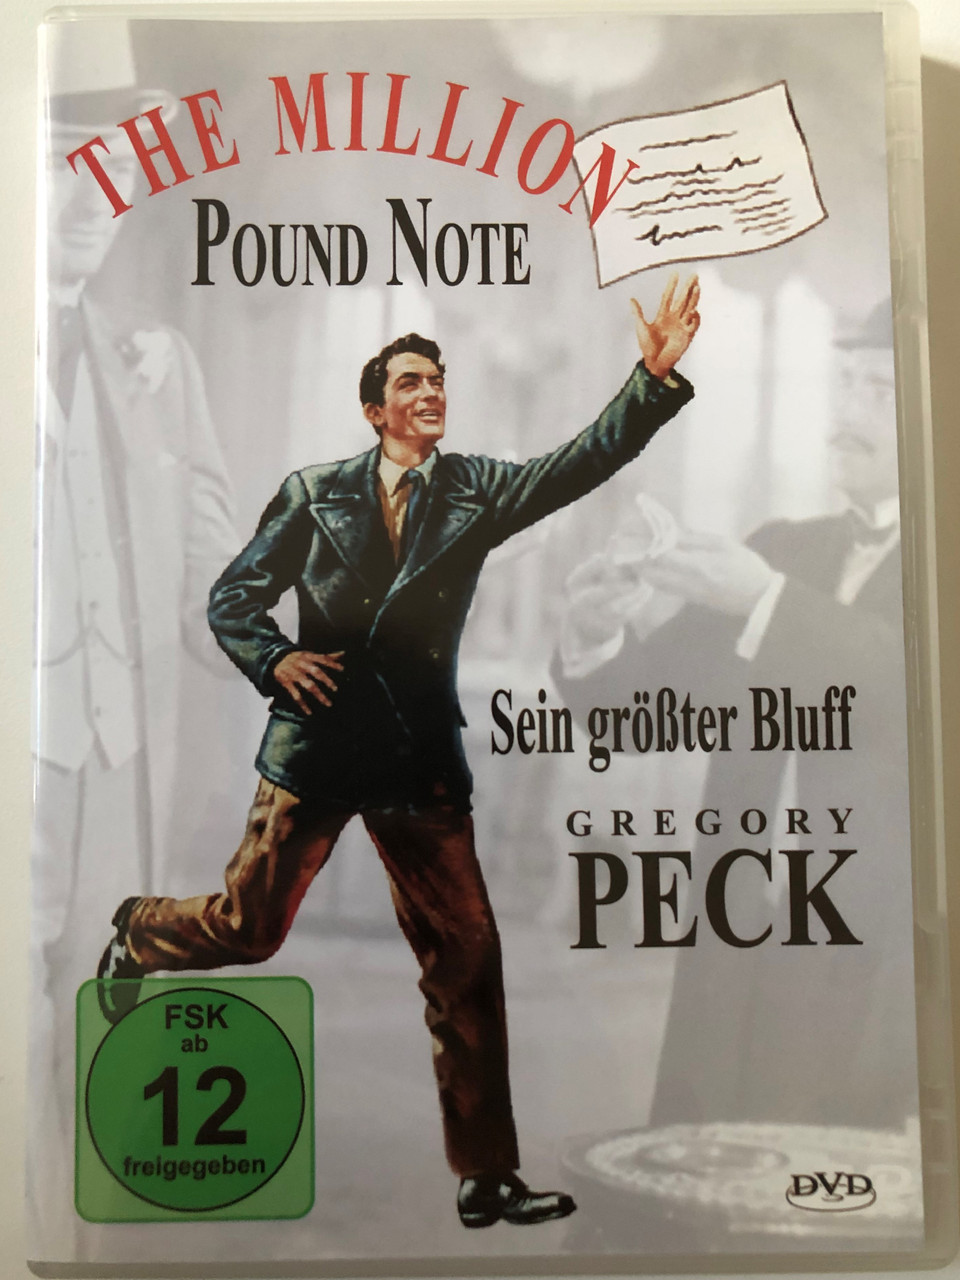 Sein größter Bluff - The Million Pound Note / Gregory Peck / DVD -  bibleinmylanguage